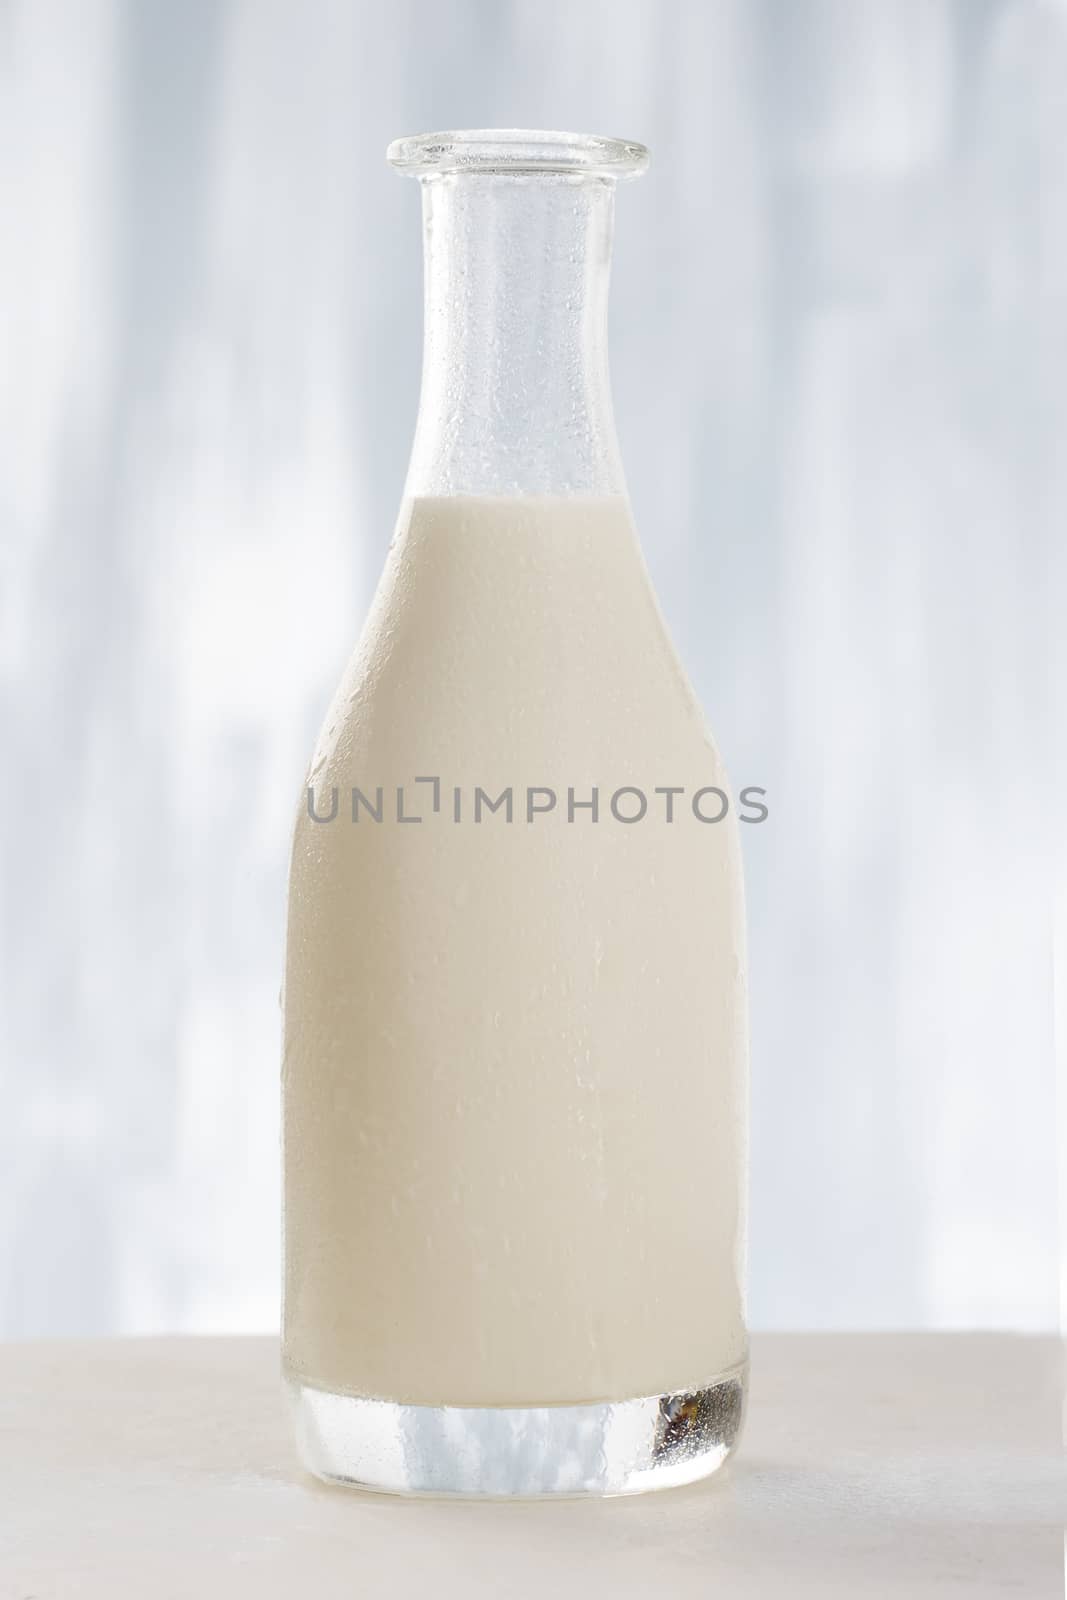 Glass bottle of milk